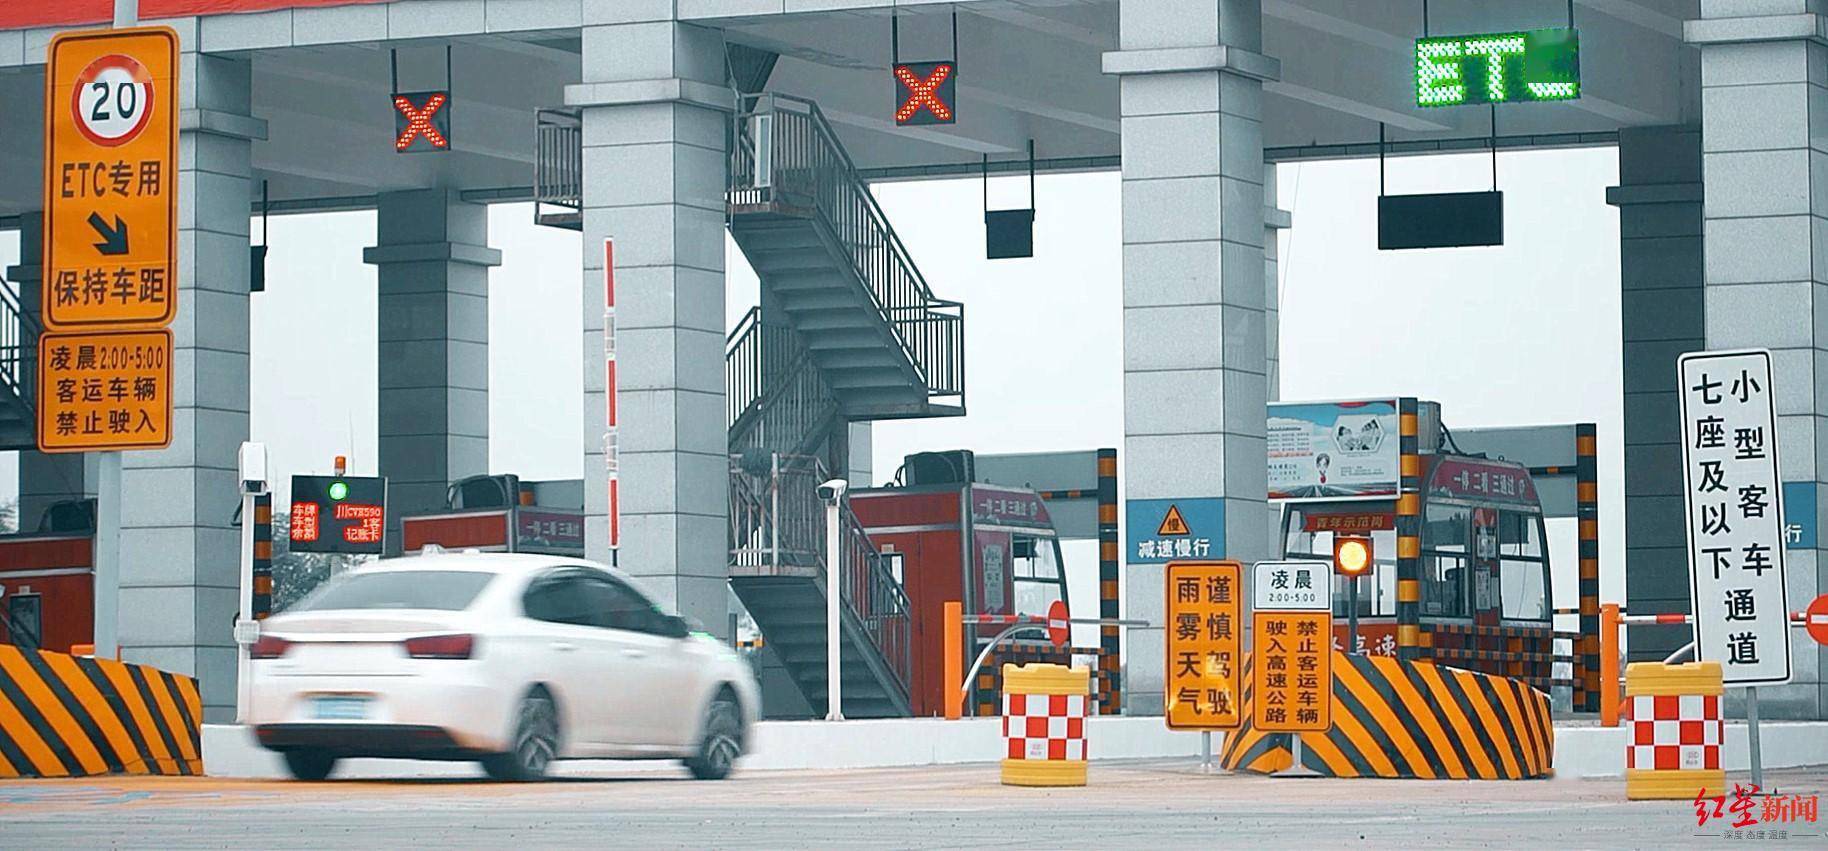 效率|四川ETC用户突破1000万，将在全省开展高速公路ETC通行效率提升专项行动